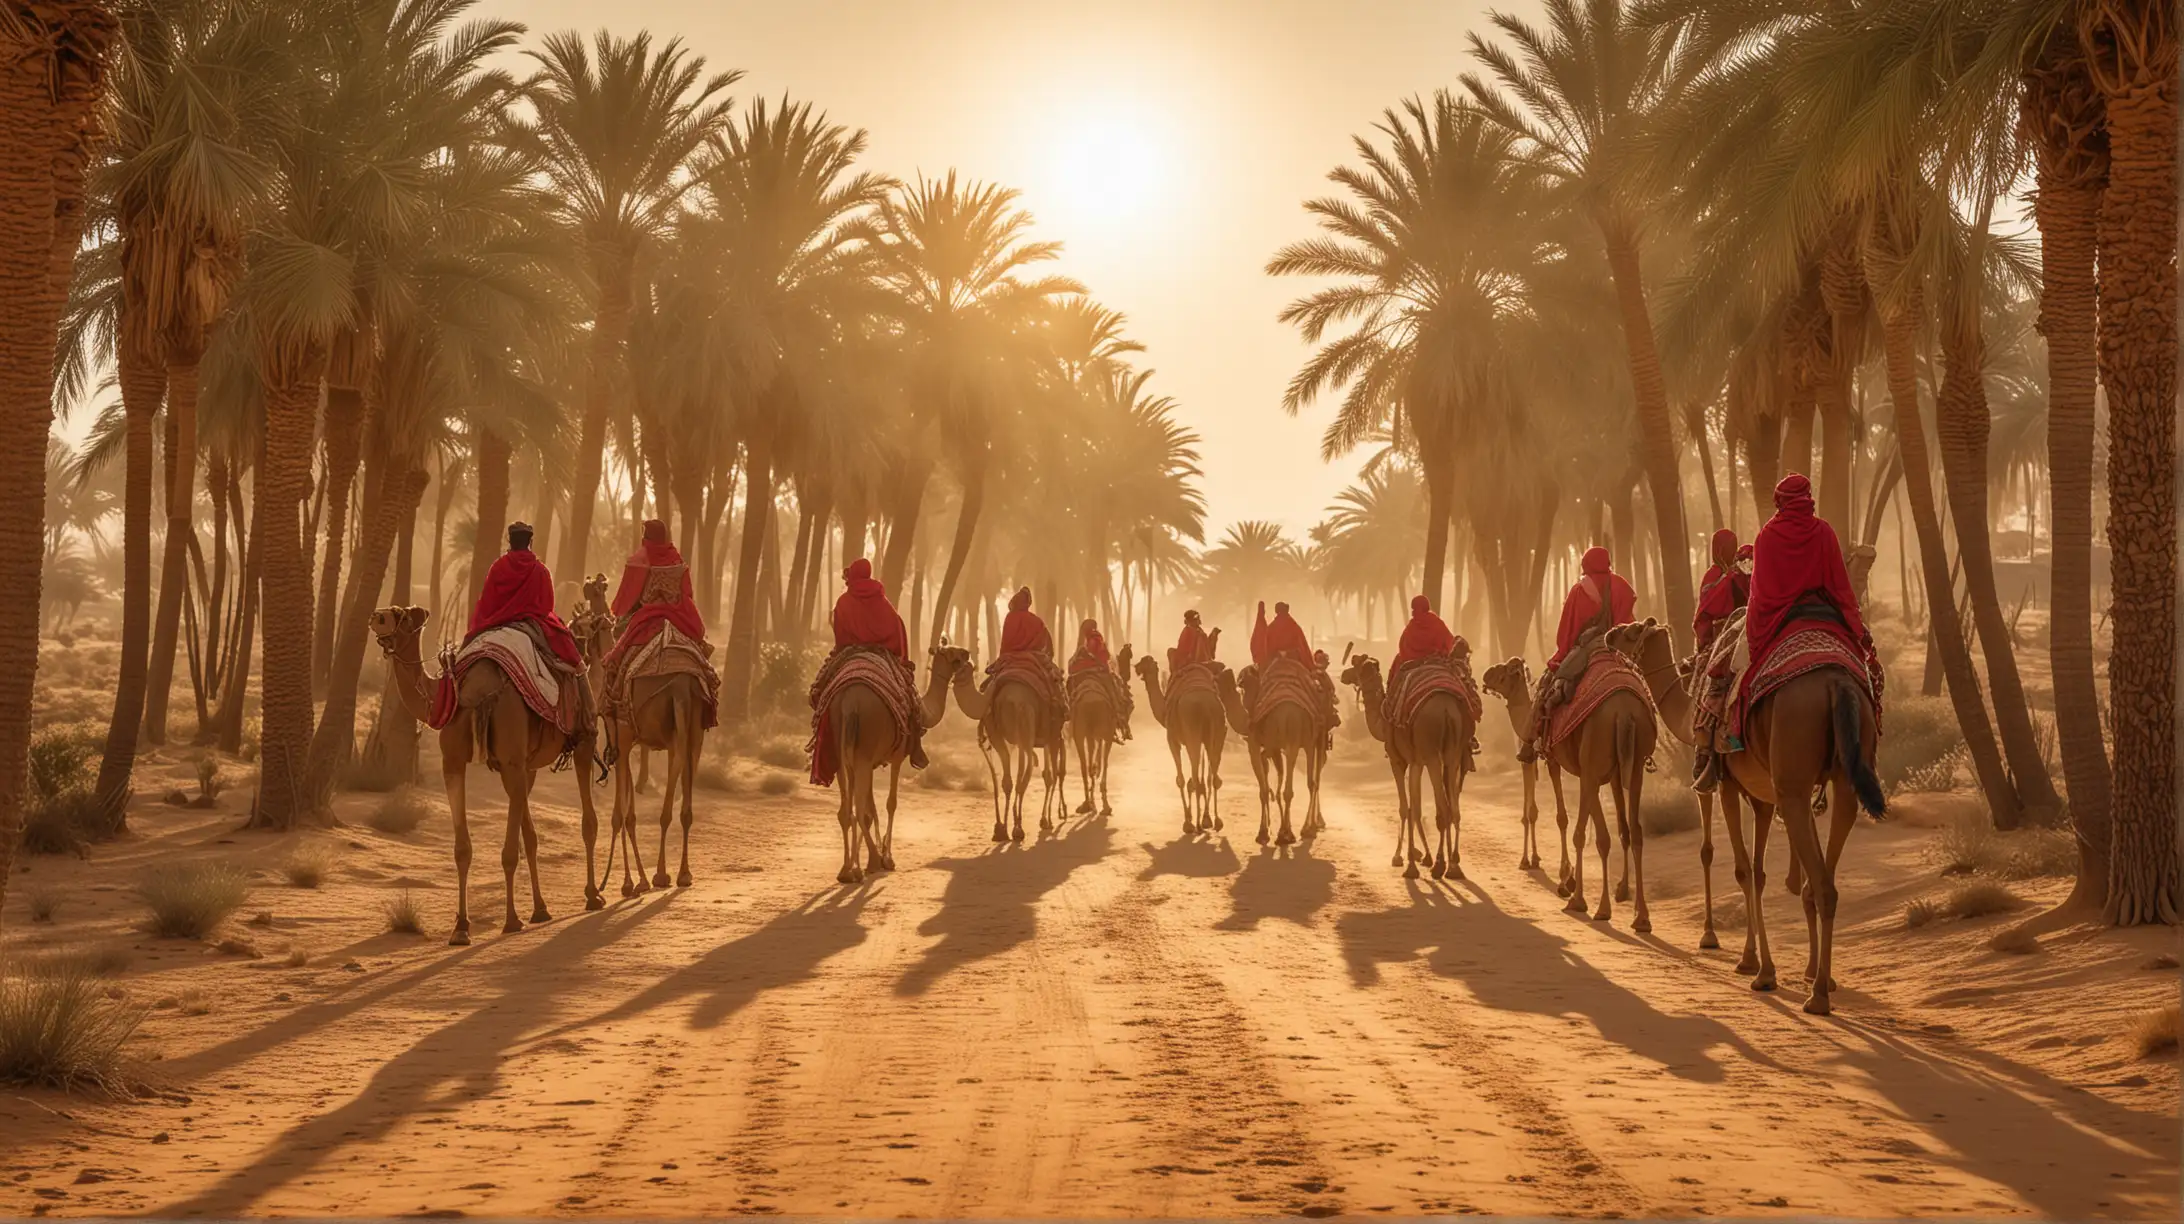 Queen of Sheba Caravan Journeying to Meet King Solomon Amidst Desert Oasis